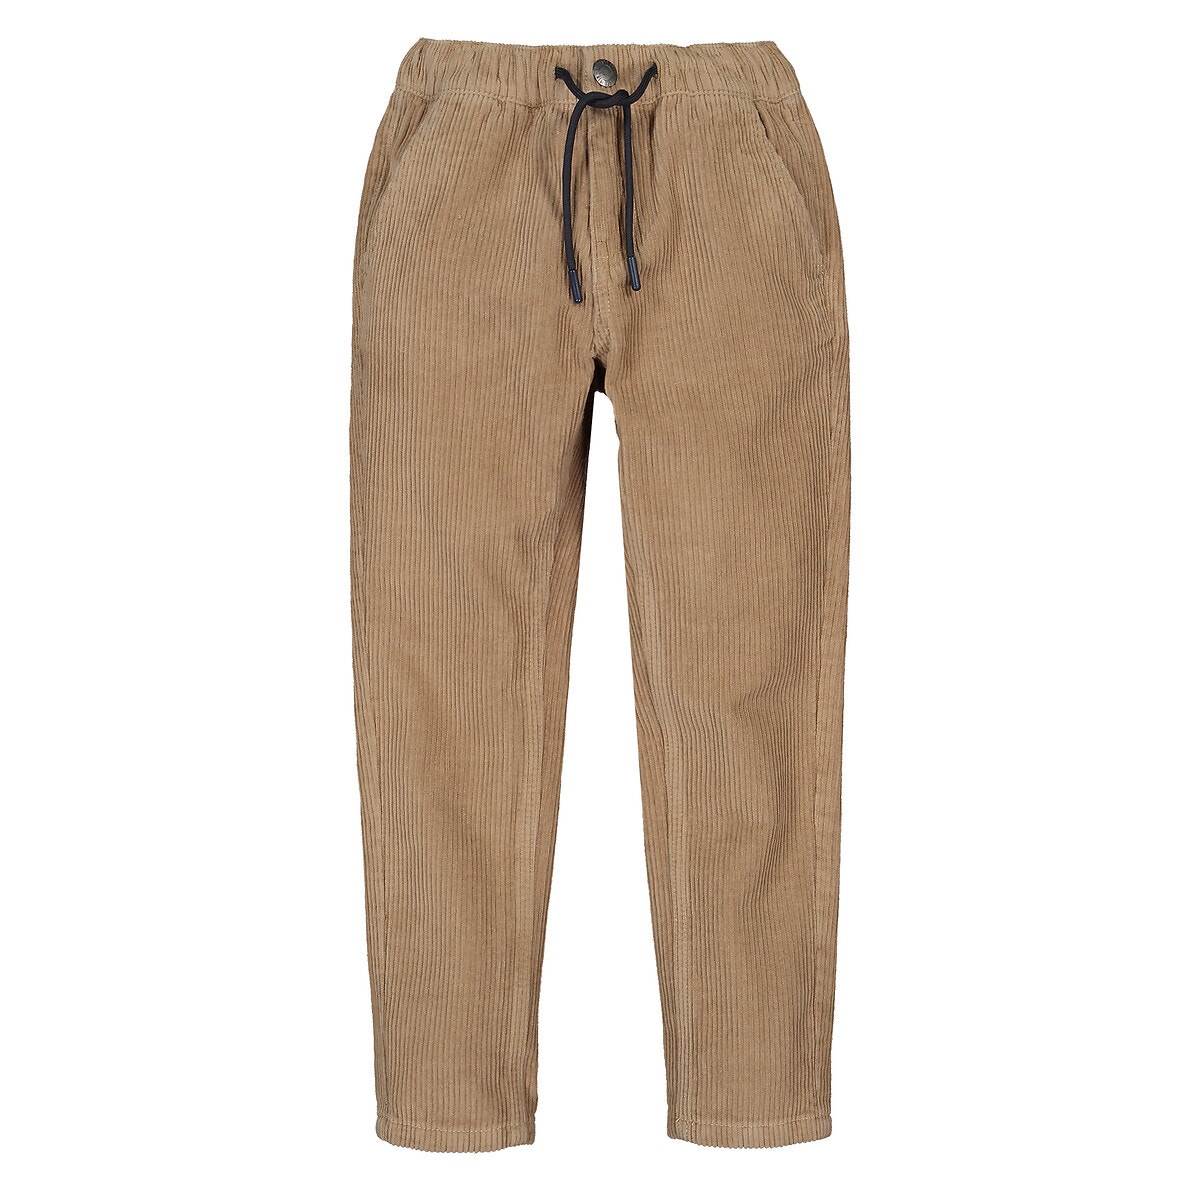 ΠΑΙΔΙ | Παντελόνια Κοτλέ παντελόνι σε ίσια γραμμή, 3-12 ετών